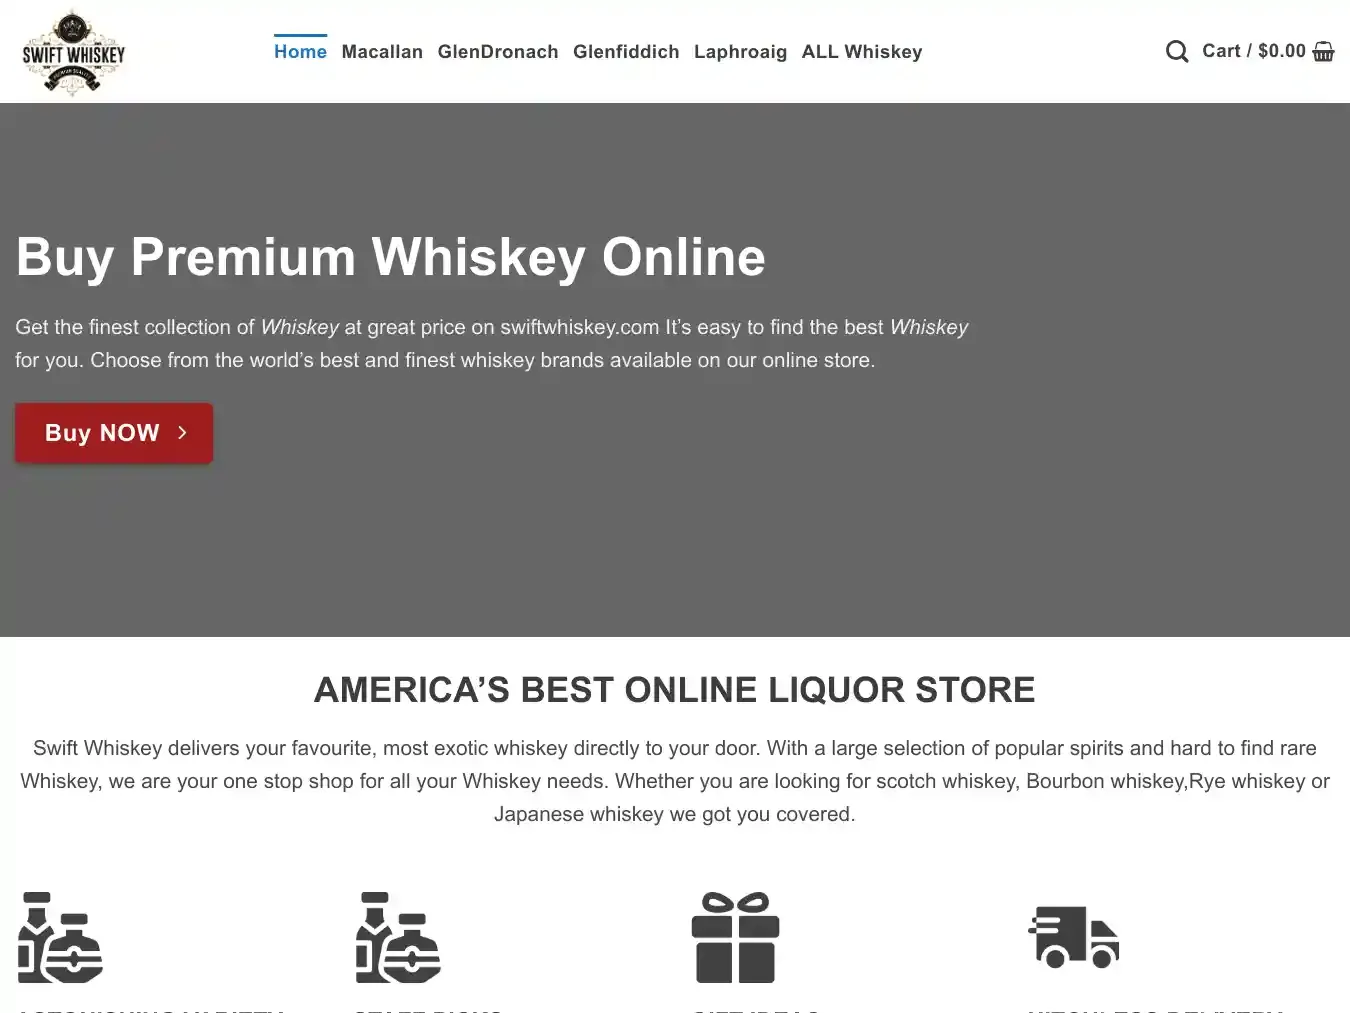 Swiftwhiskeysupply.com Fraudulent Whisky website.